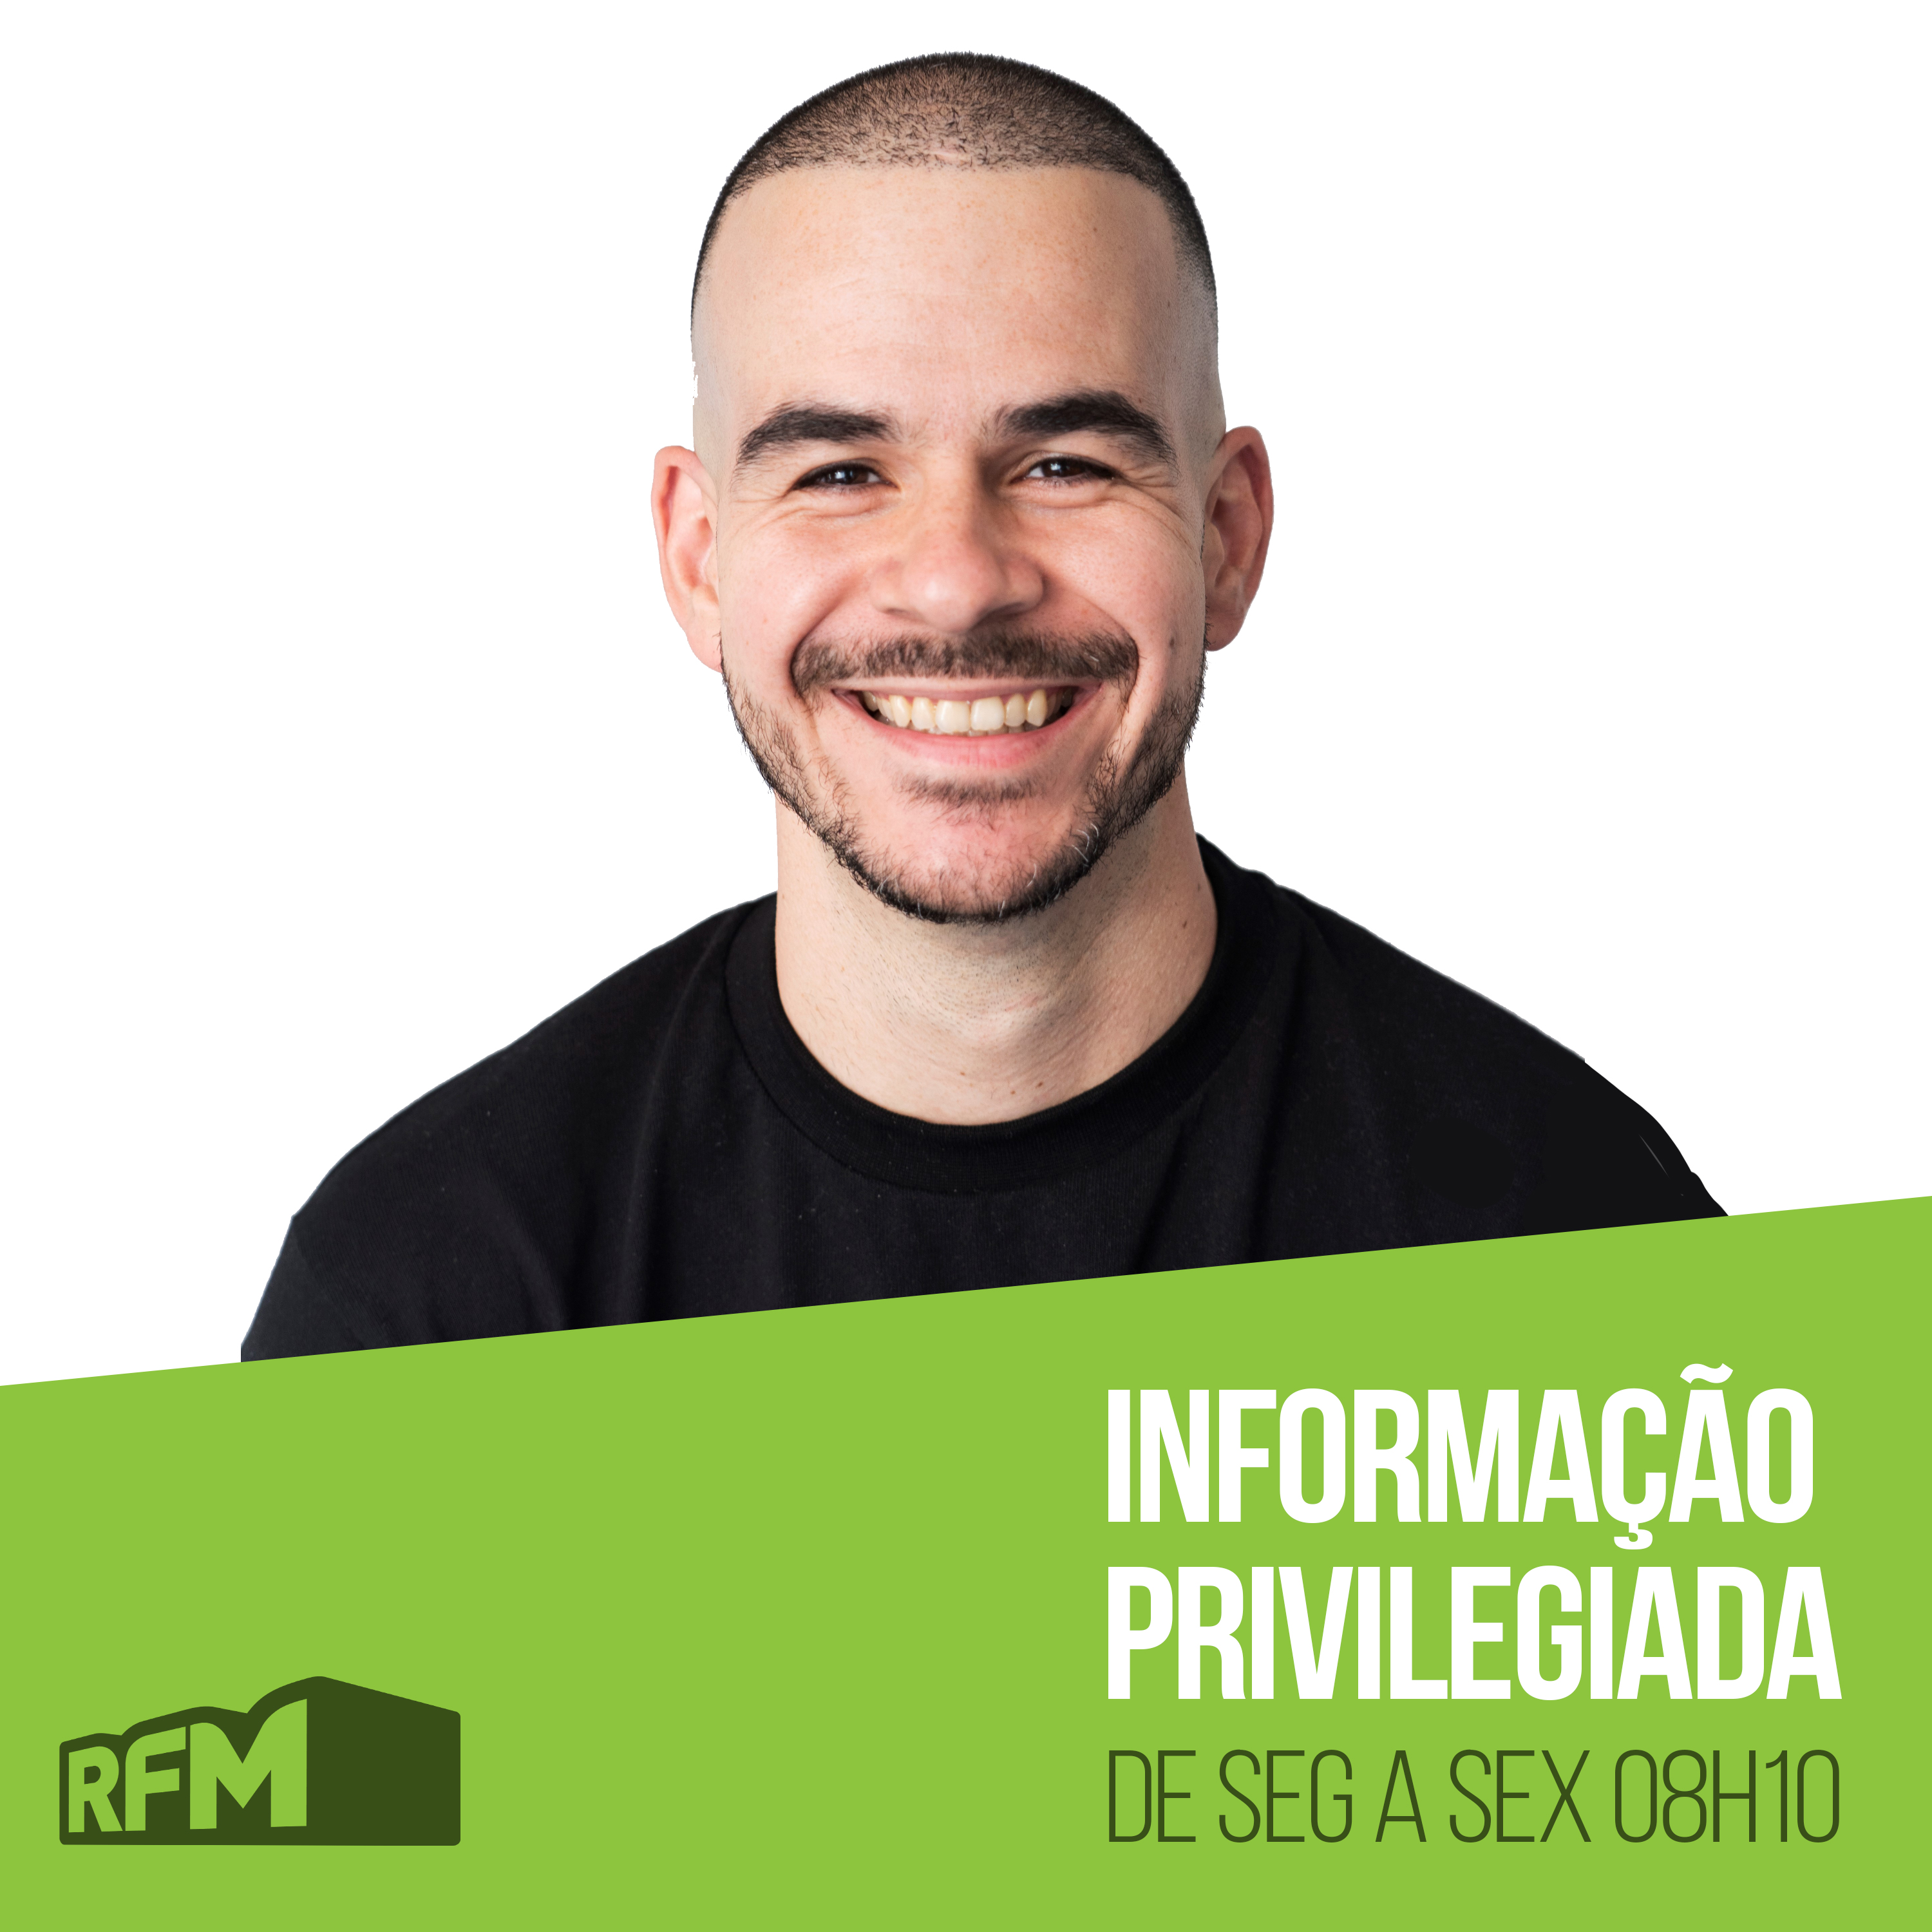 RFM - Informação Privilegiada: A PRIMEIRA VACINADA DO REINO UNIDO